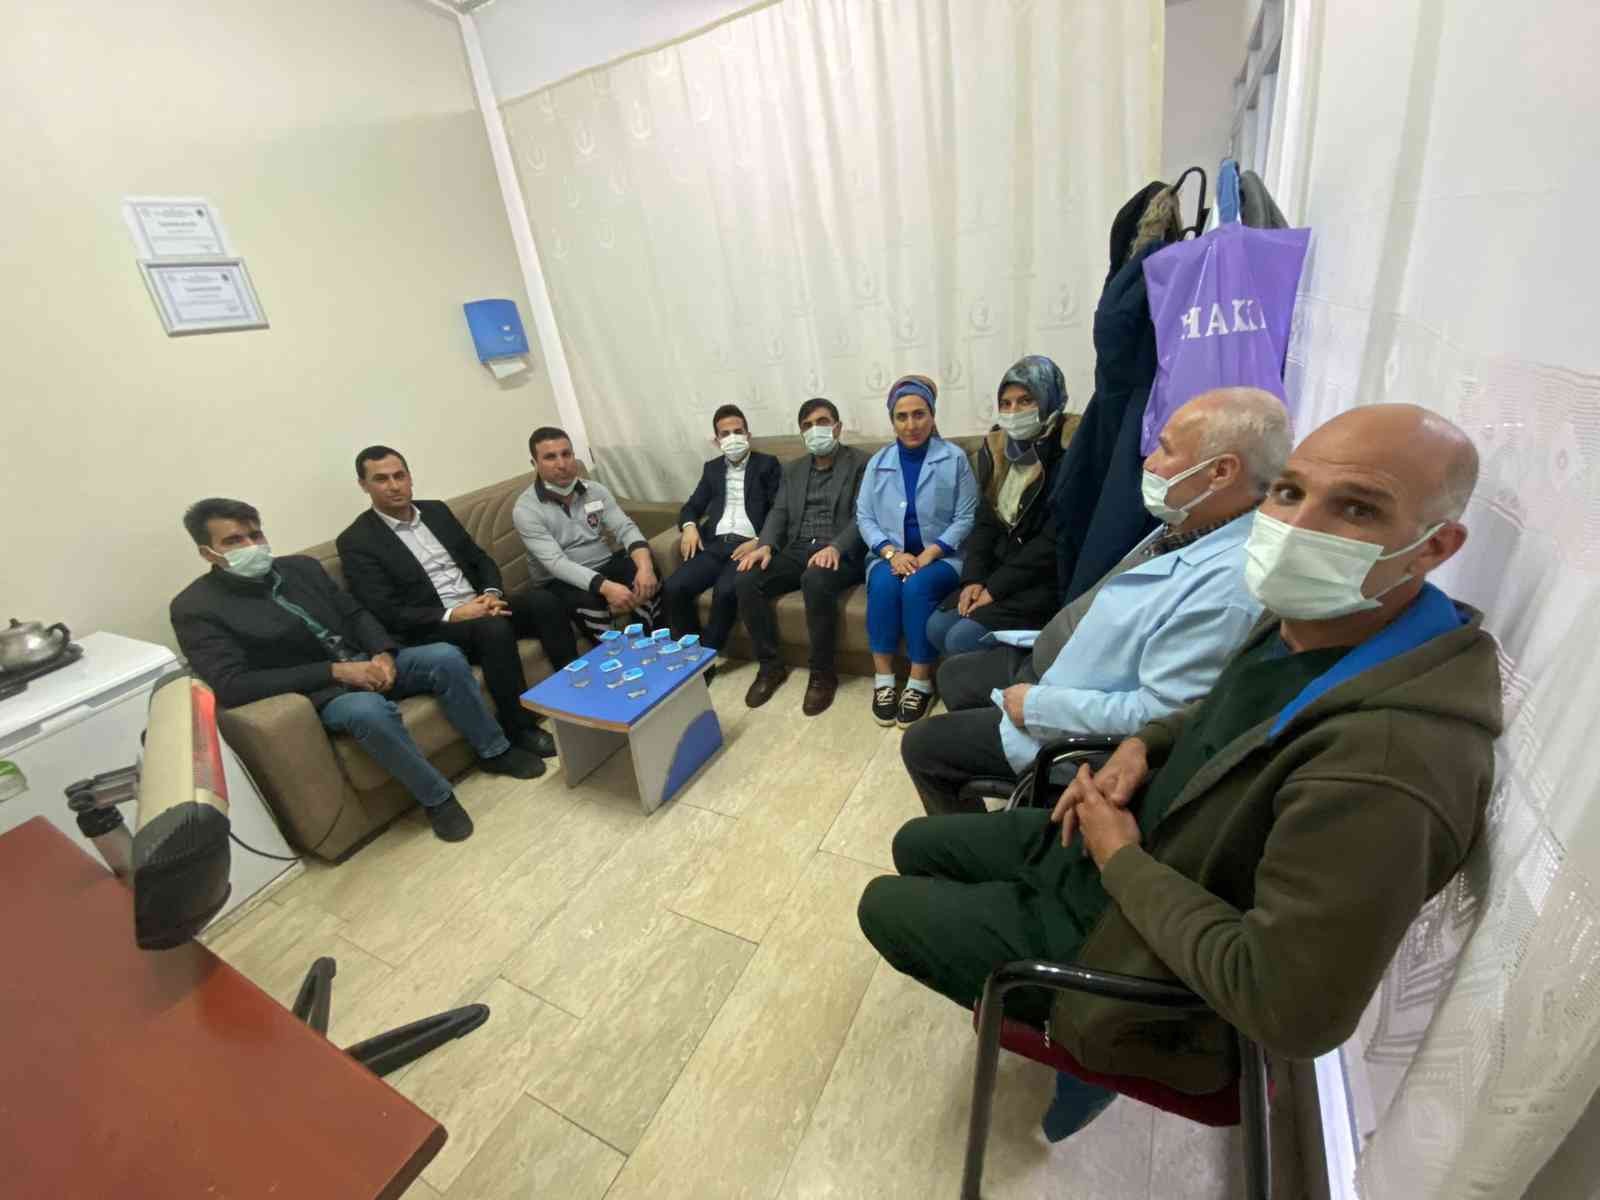 Öz Sağlık İş Sendikası Diyarbakır Şube Başkan Aküzüm, sendika üyeleriyle bir araya geldi